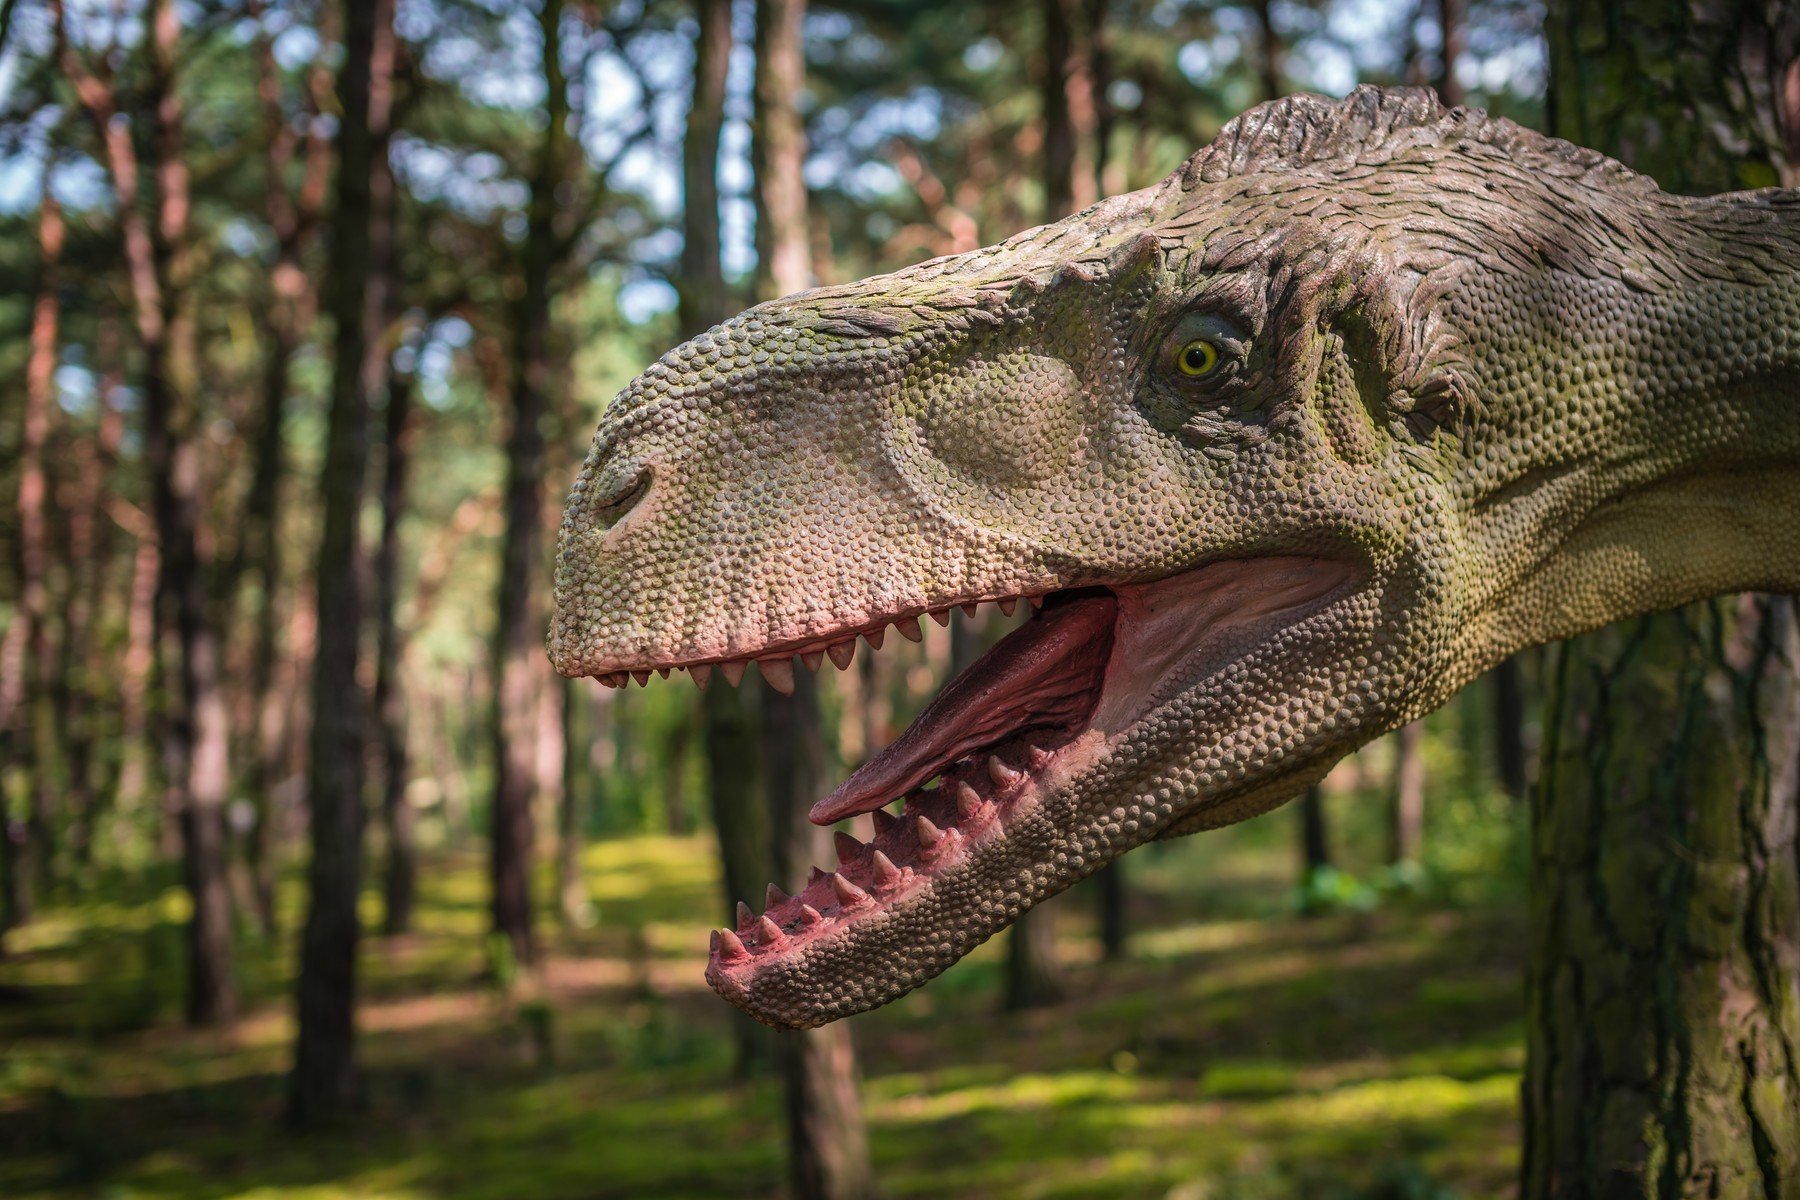 Világszenzáció: dinoszauruszt találtak Magyarországon, ráadásul egy 5 méteres ragadozót